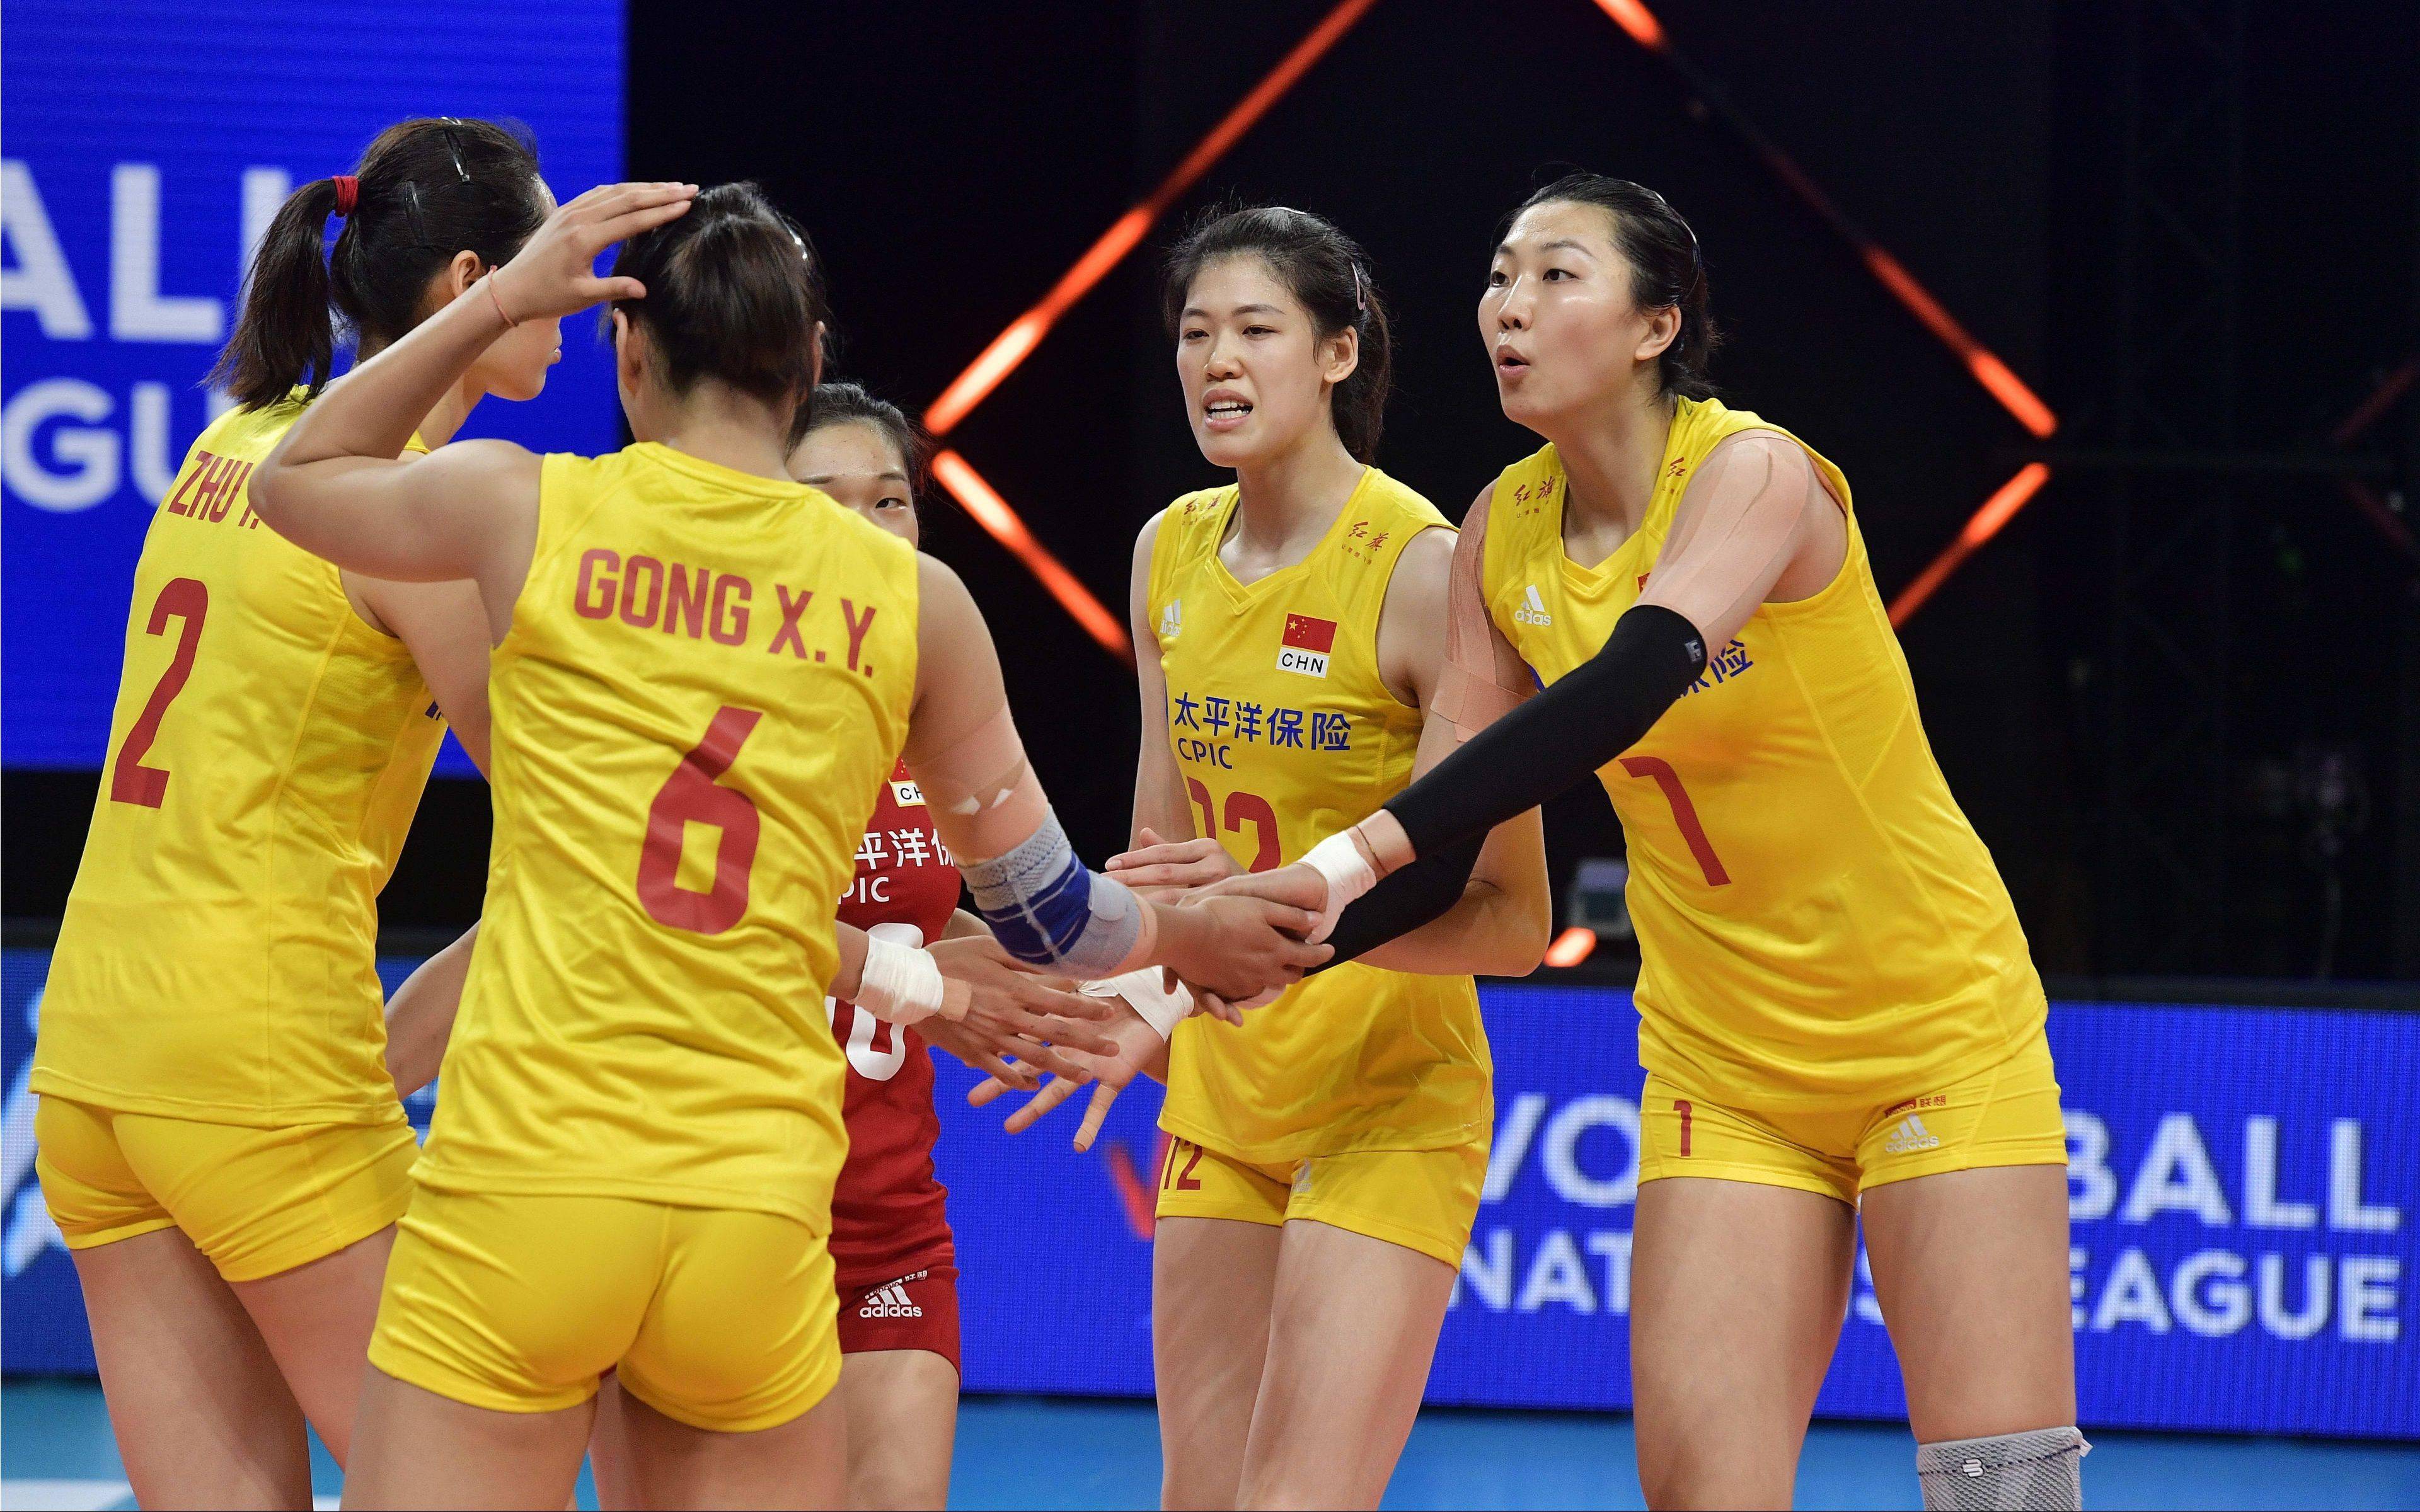 6大主力归来,中国女排3比0横扫荷兰队